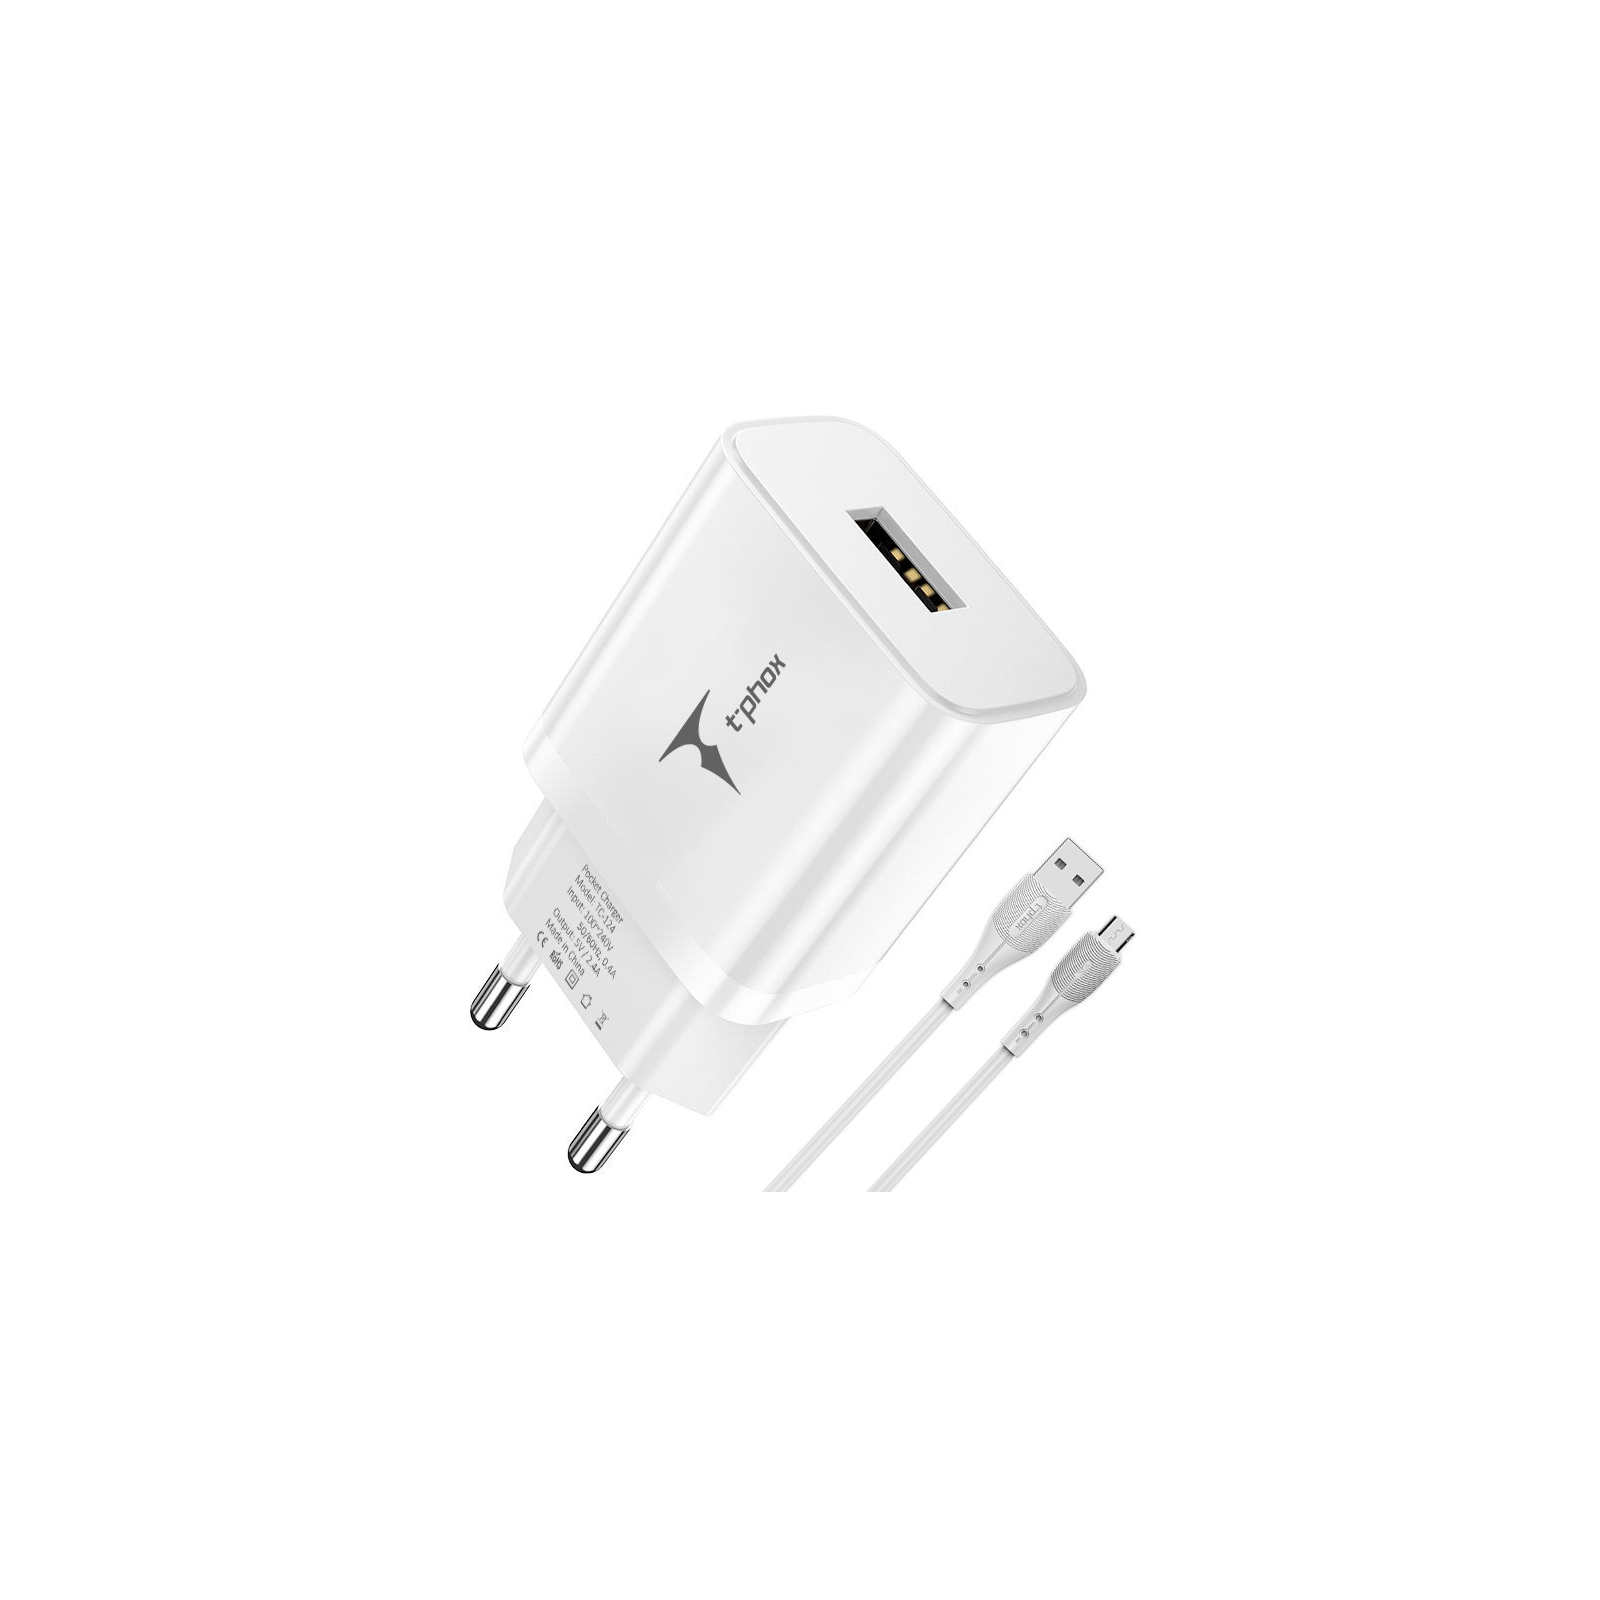 Зарядний пристрій T-Phox TCC-124 Pocket USB + MicroUSB cable White (TCC-124 (W)+Micro) зображення 2